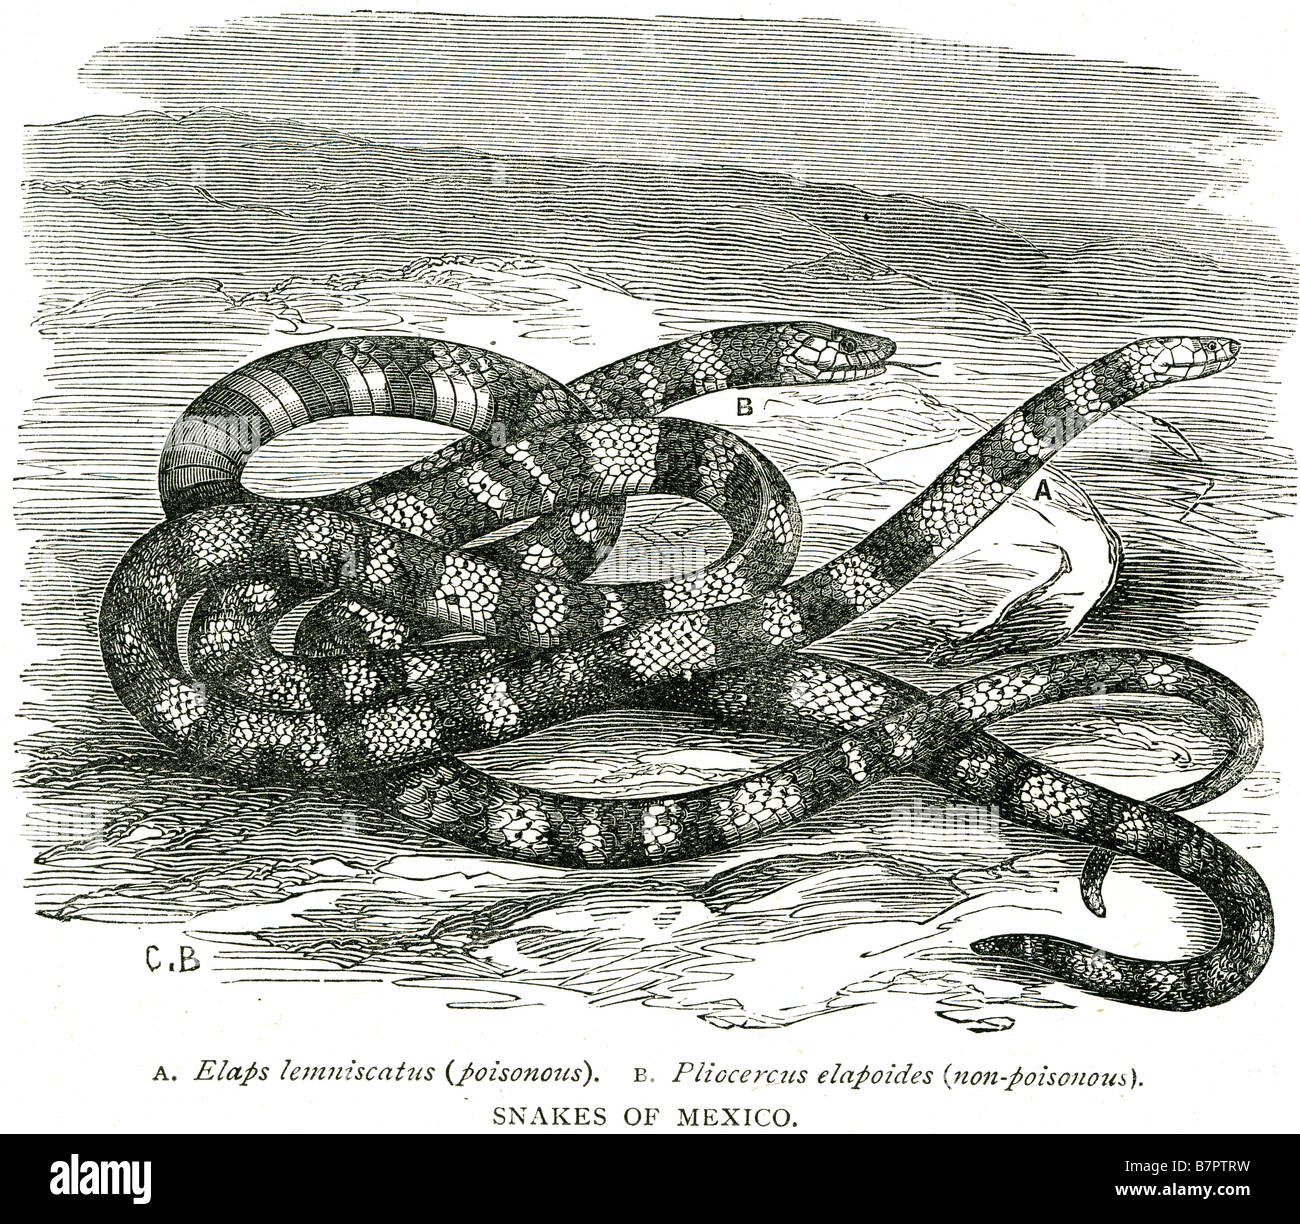 snakes of mexico elaps lemniscatus poisonous pliocercus elapoides non poisonous Stock Photo